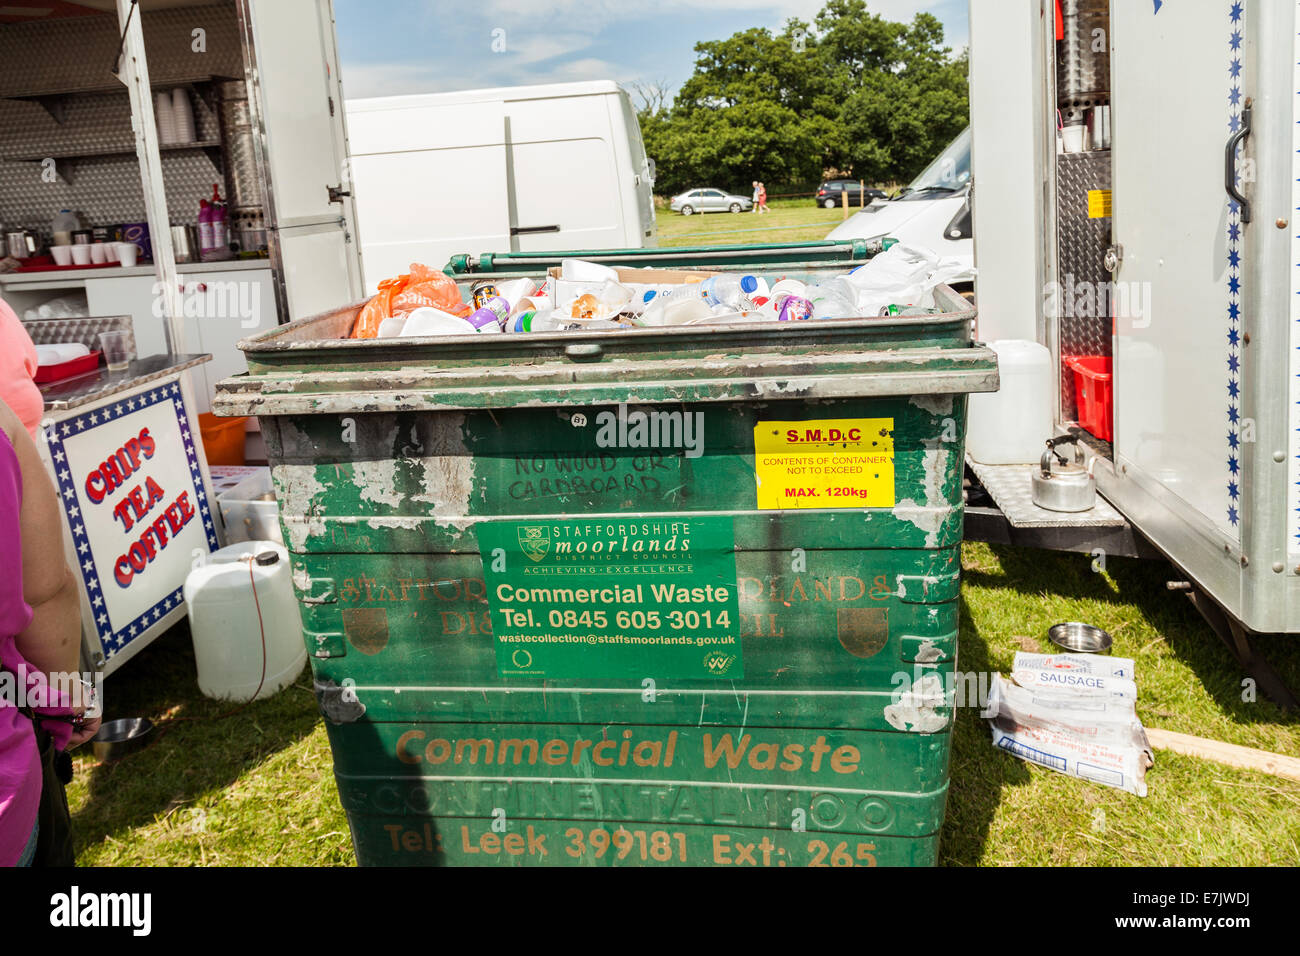 Poireau & DISTRICT SHOW, Staffordshire, Angleterre, Grande-Bretagne, 2014. Disposer des déchets commerciaux bin plein de bêtises, en champ ouvert. Banque D'Images